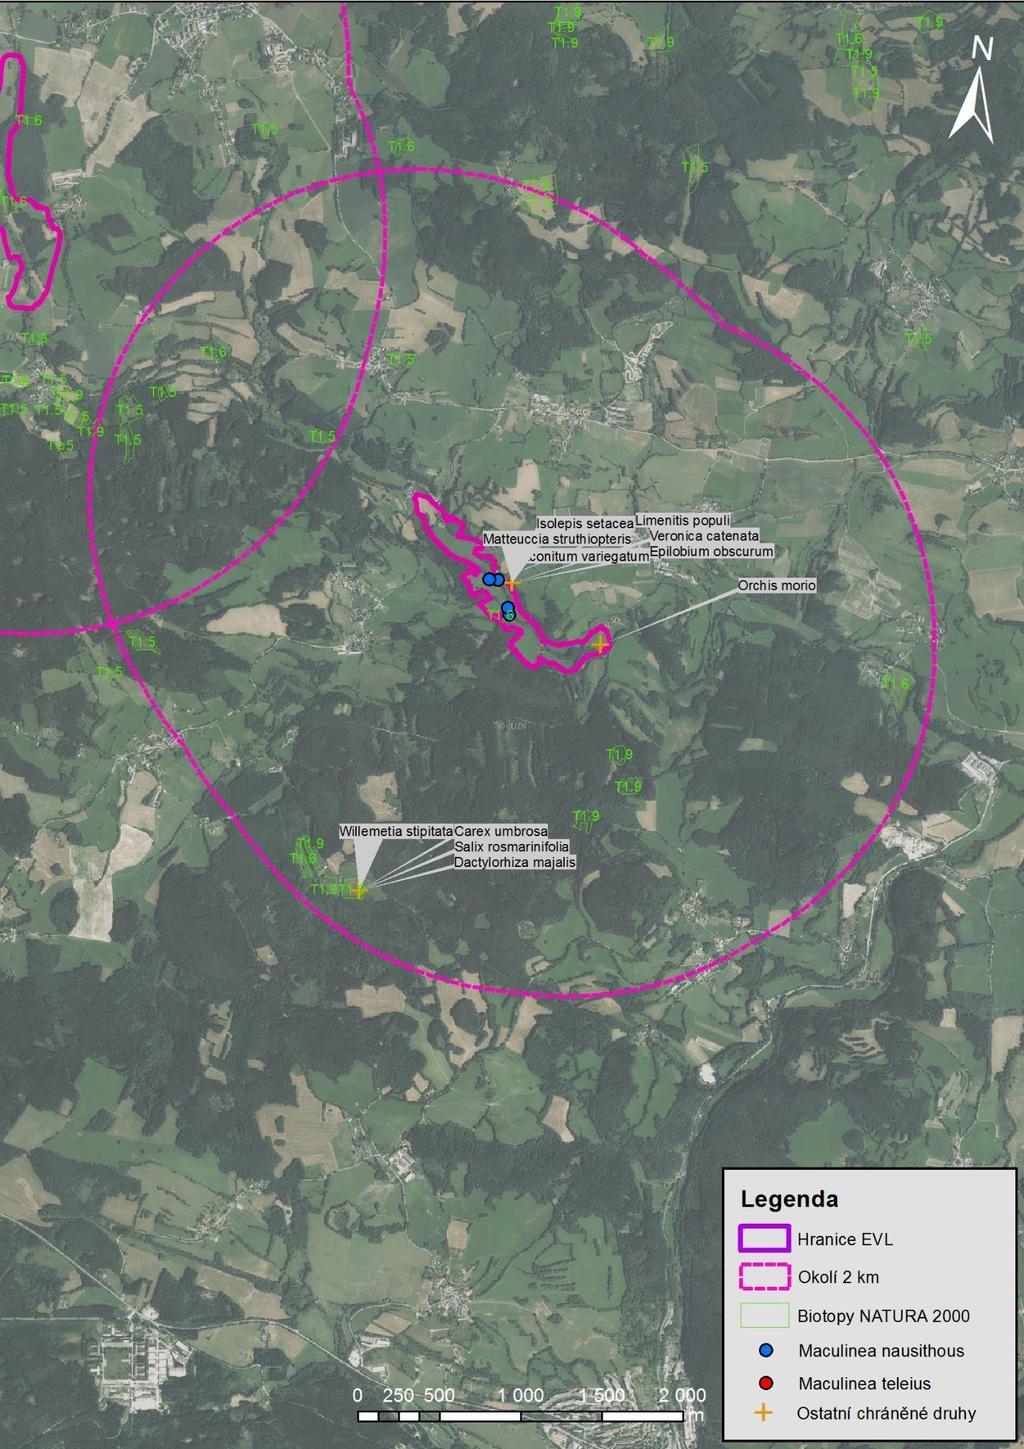 Mapa 14 EVL Onšovice-Mlýny a okolí 2 km. Znázorněna je hranice EVL, okolí 2 km, naturové biotopy T1.